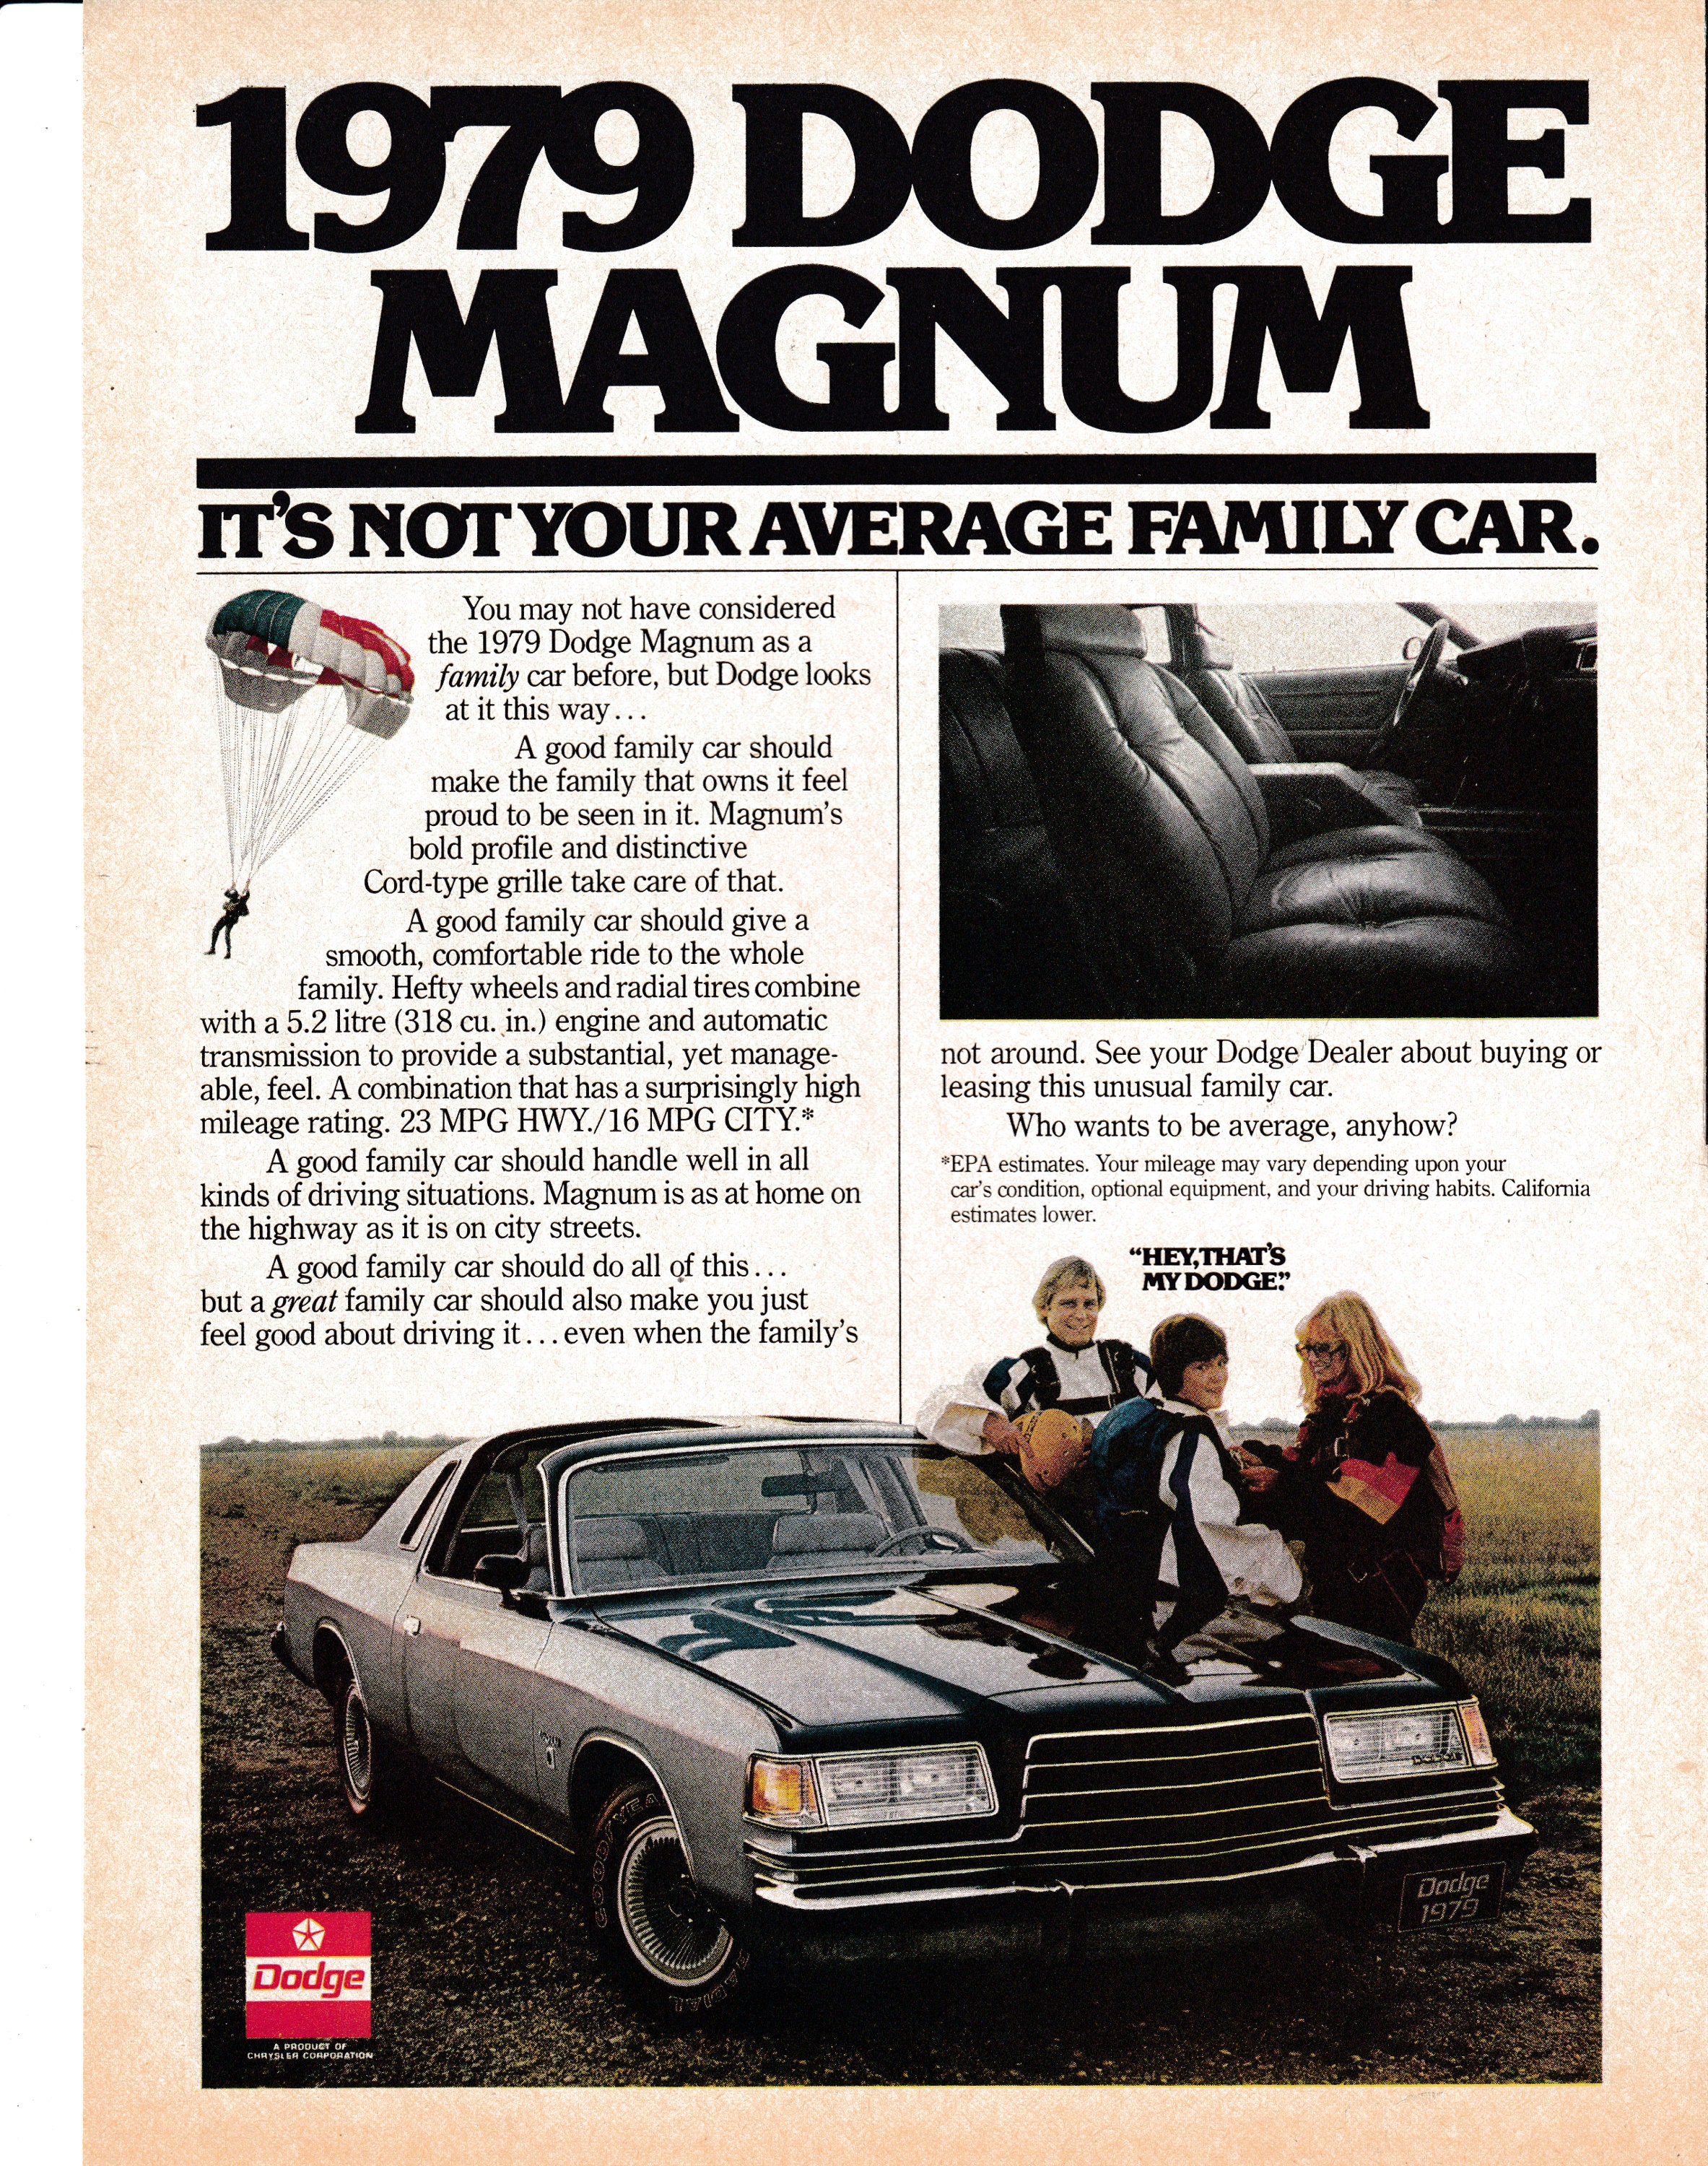 1979 Dodge Magnum 5.2 Liter 318 Ci Original Magazine Ad